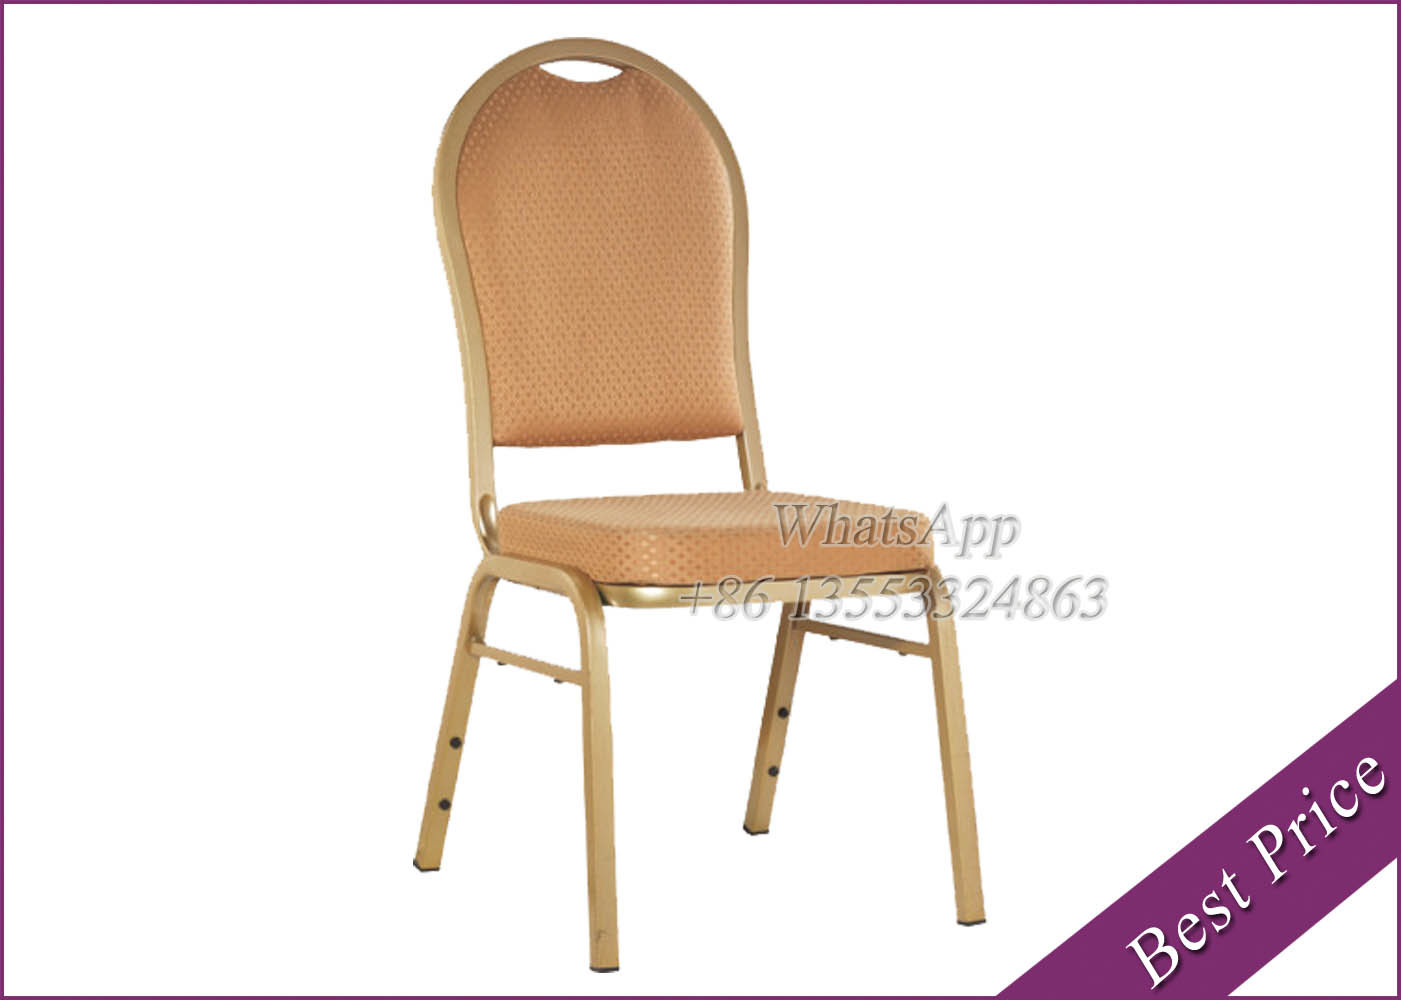 Hot Sale Chair For Wedding, Wedding Chair (YA-5)